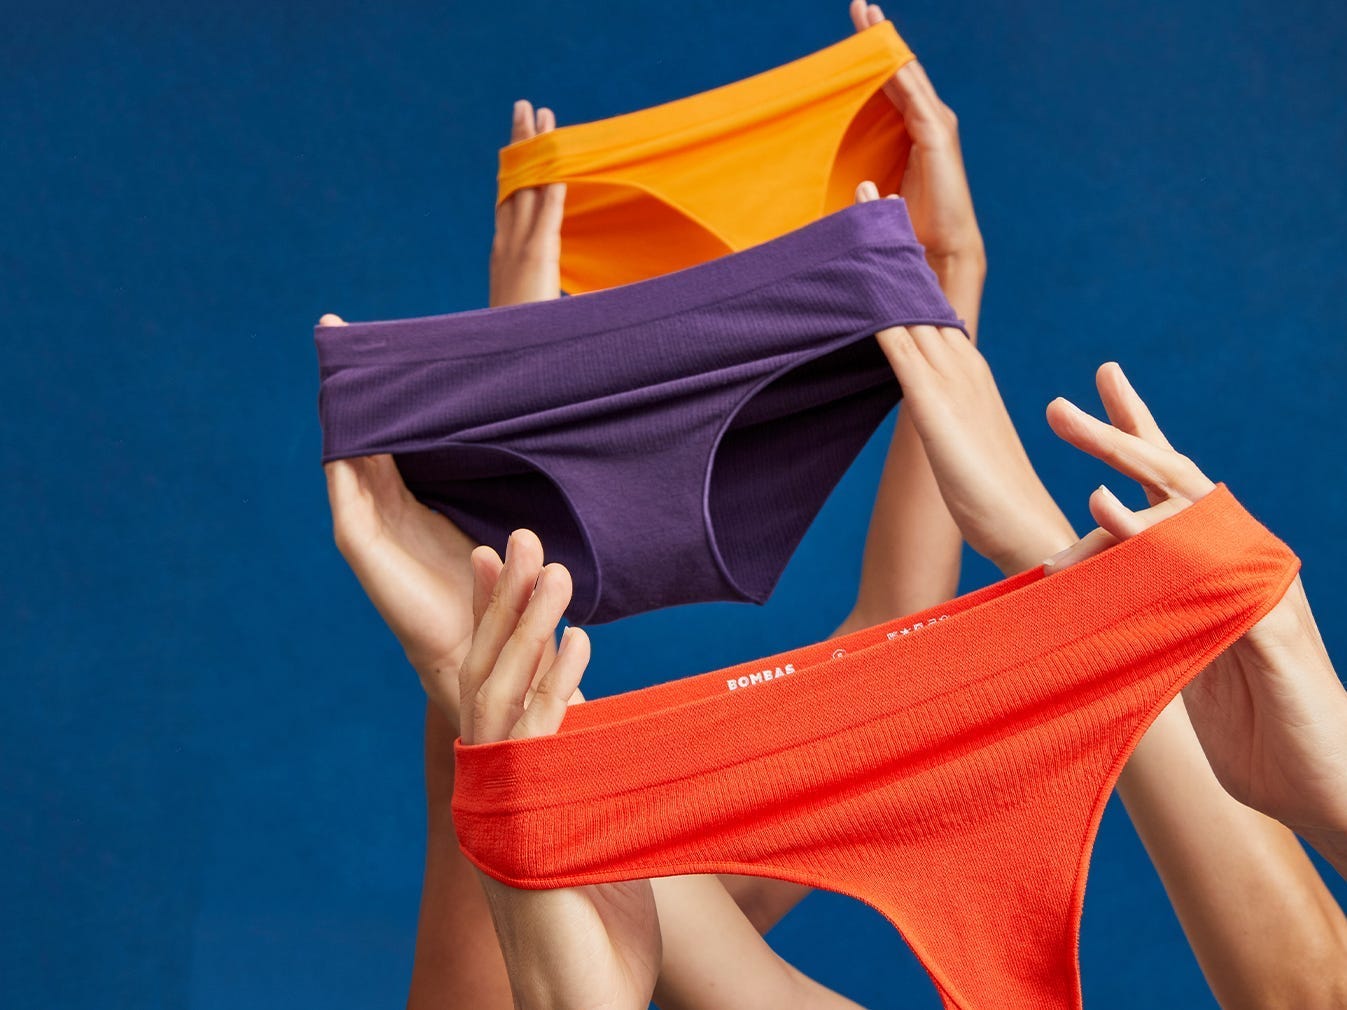 Hände halten Bombas-Unterwäsche in drei verschiedenen Stilen und Farben hoch.